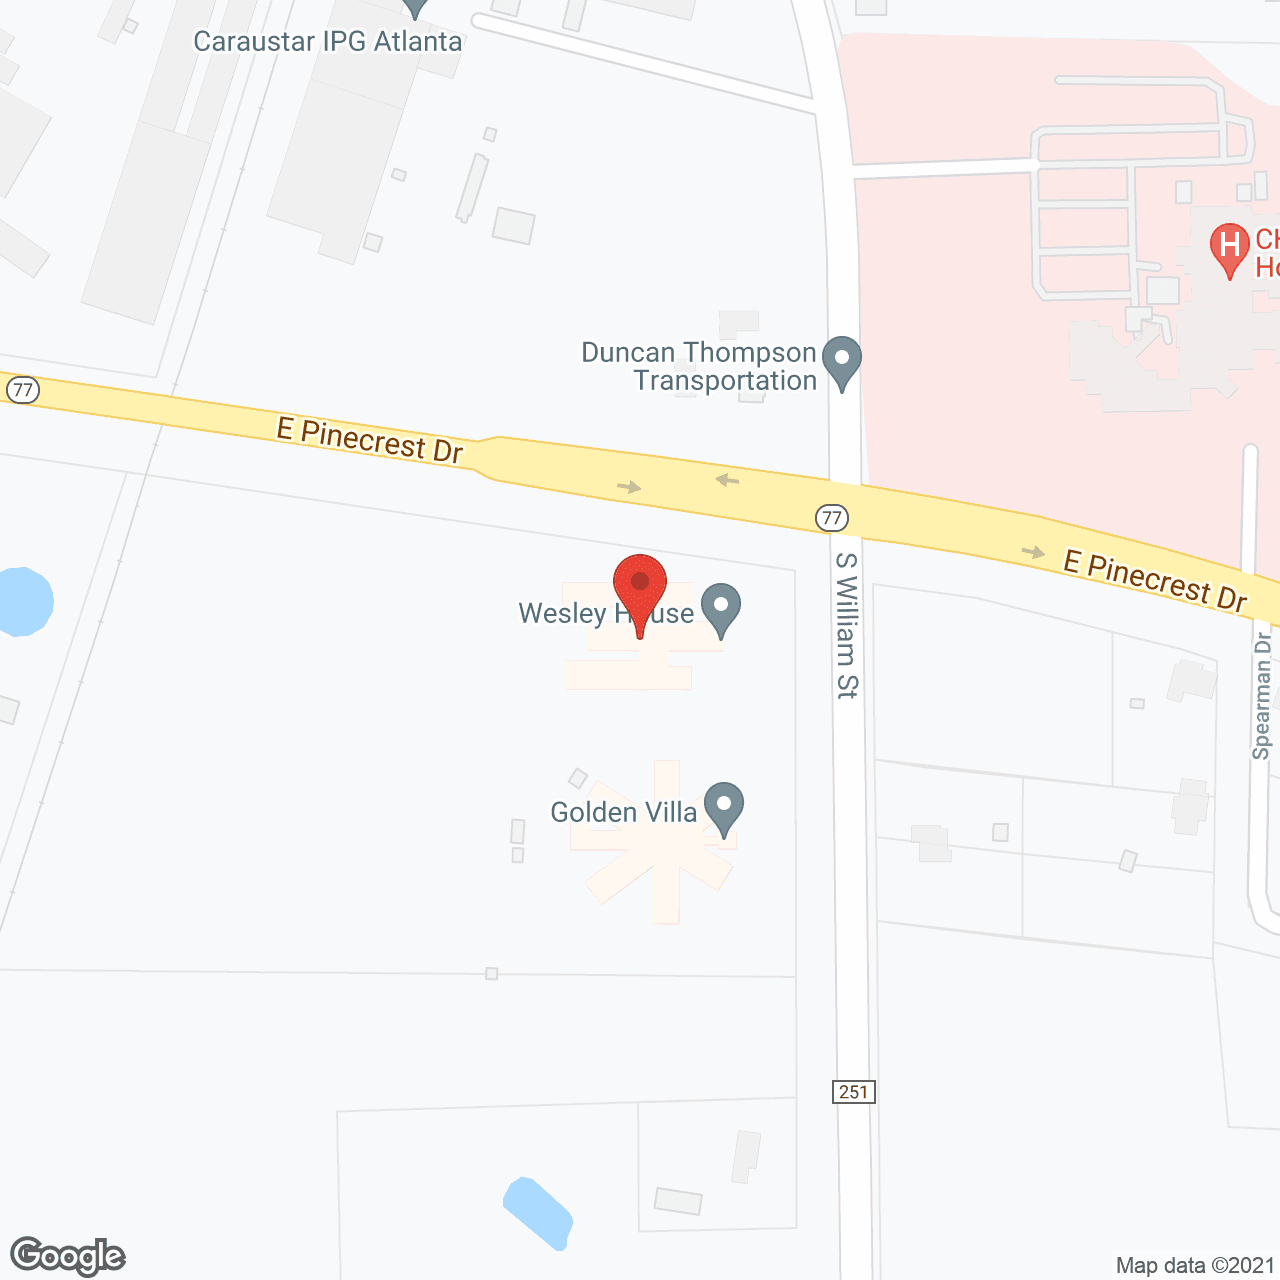 Wesley House - Atlanta in google map